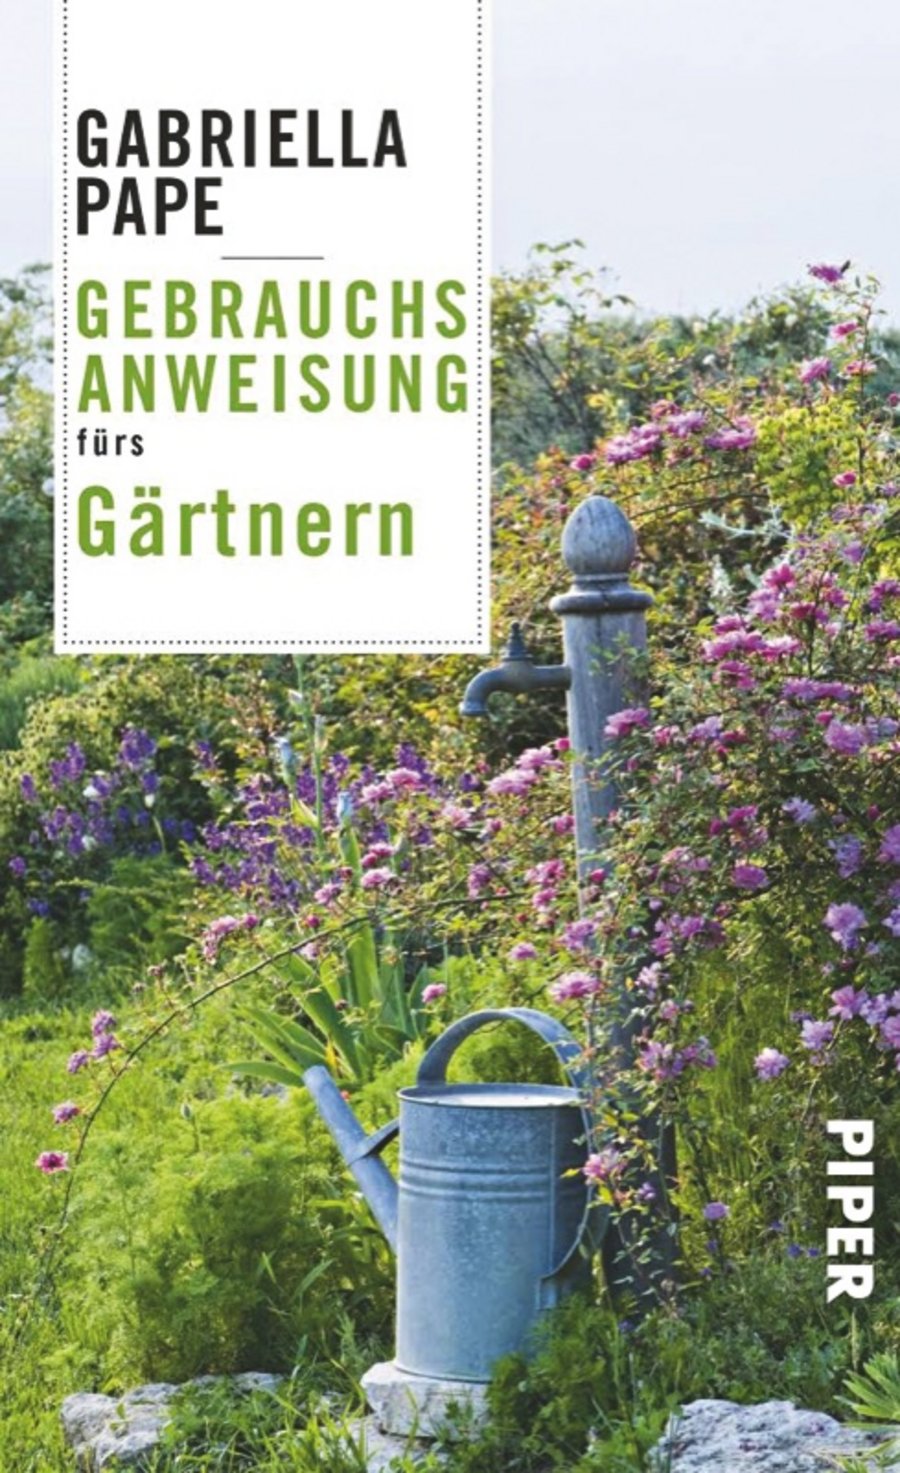 Bücher Gartengestaltung